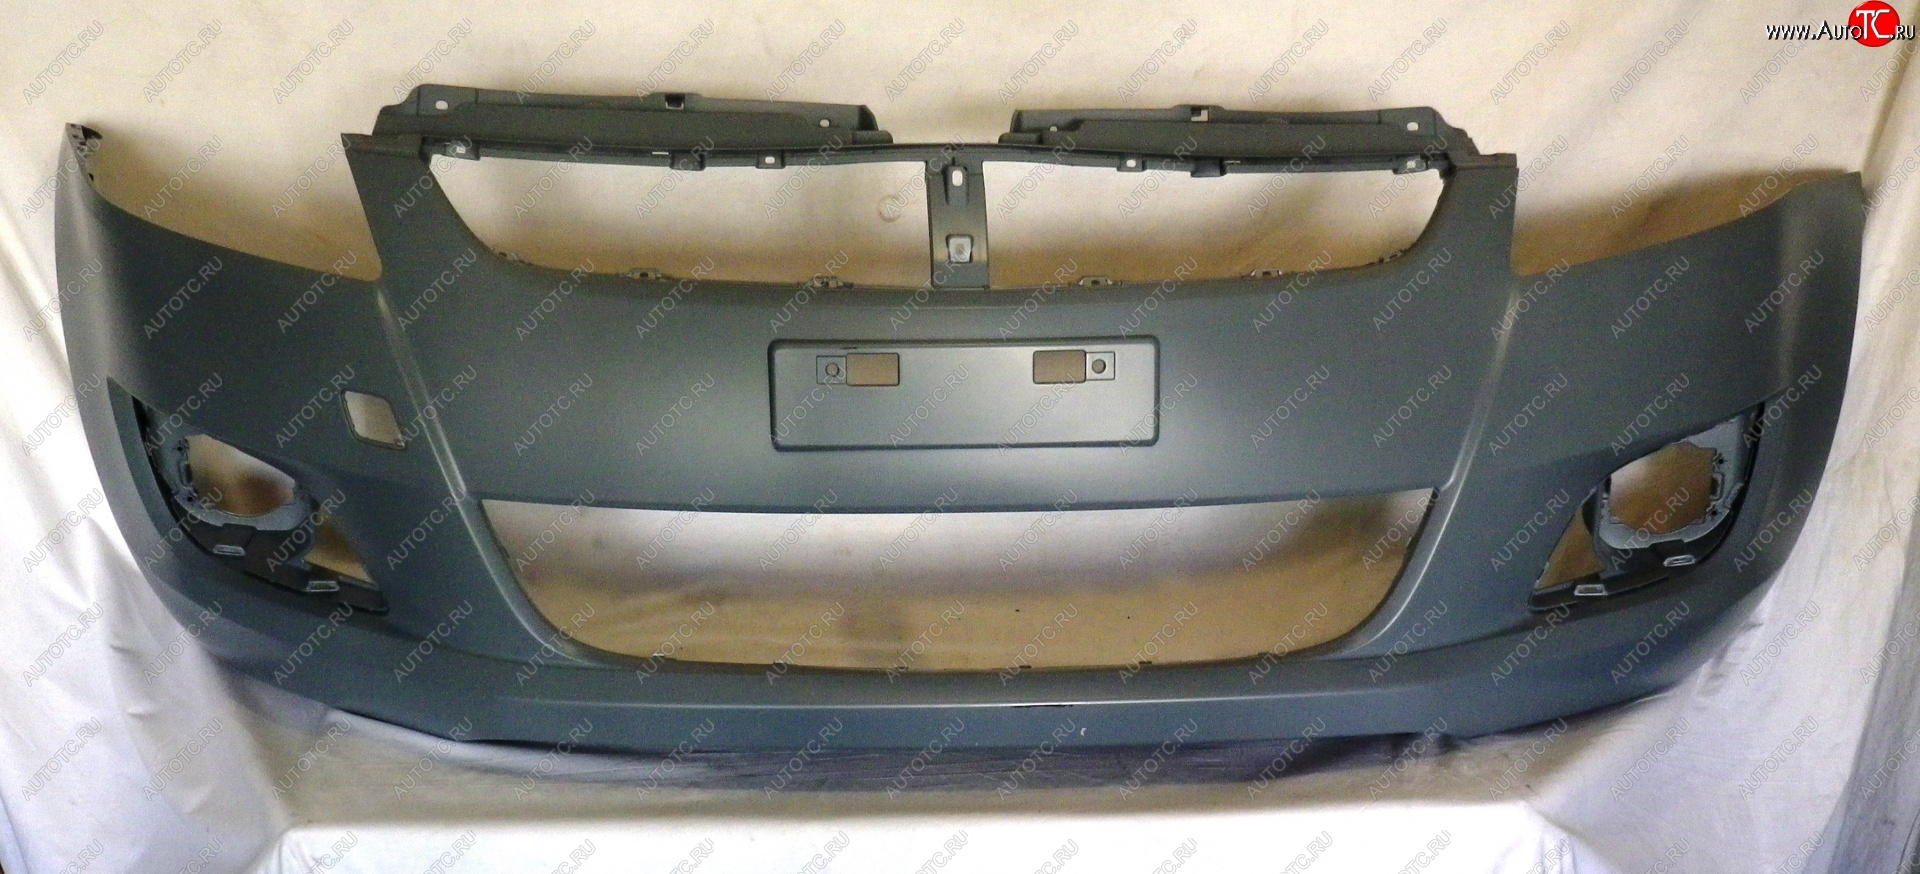 11 999 р. Передний бампер TYG  Suzuki Swift  ZC72S (2010-2013) (Неокрашенный)